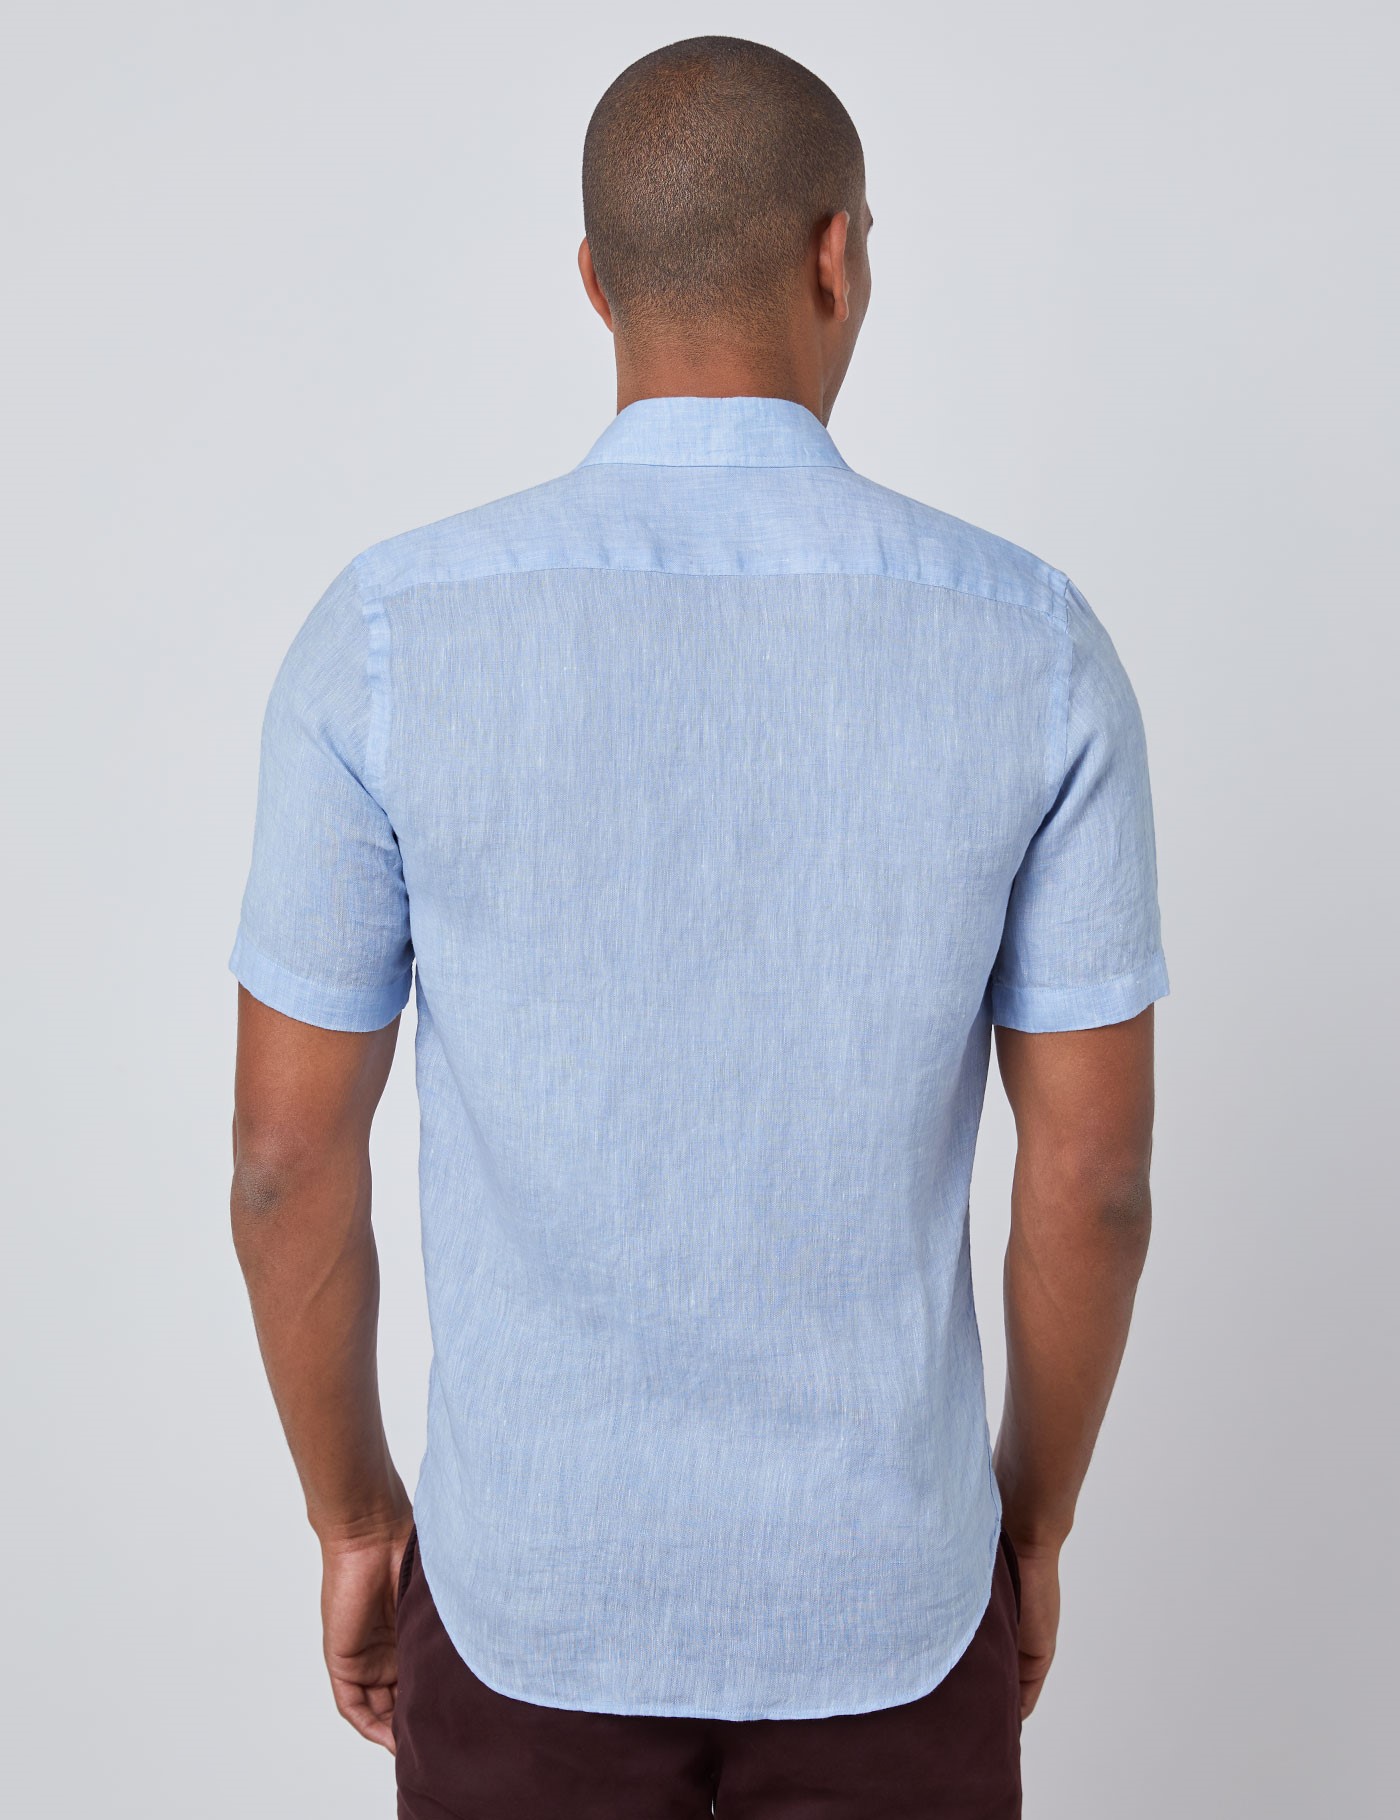 Men’s Light Blue Short Sleeve Linen Shirt | Hawes & Curtis